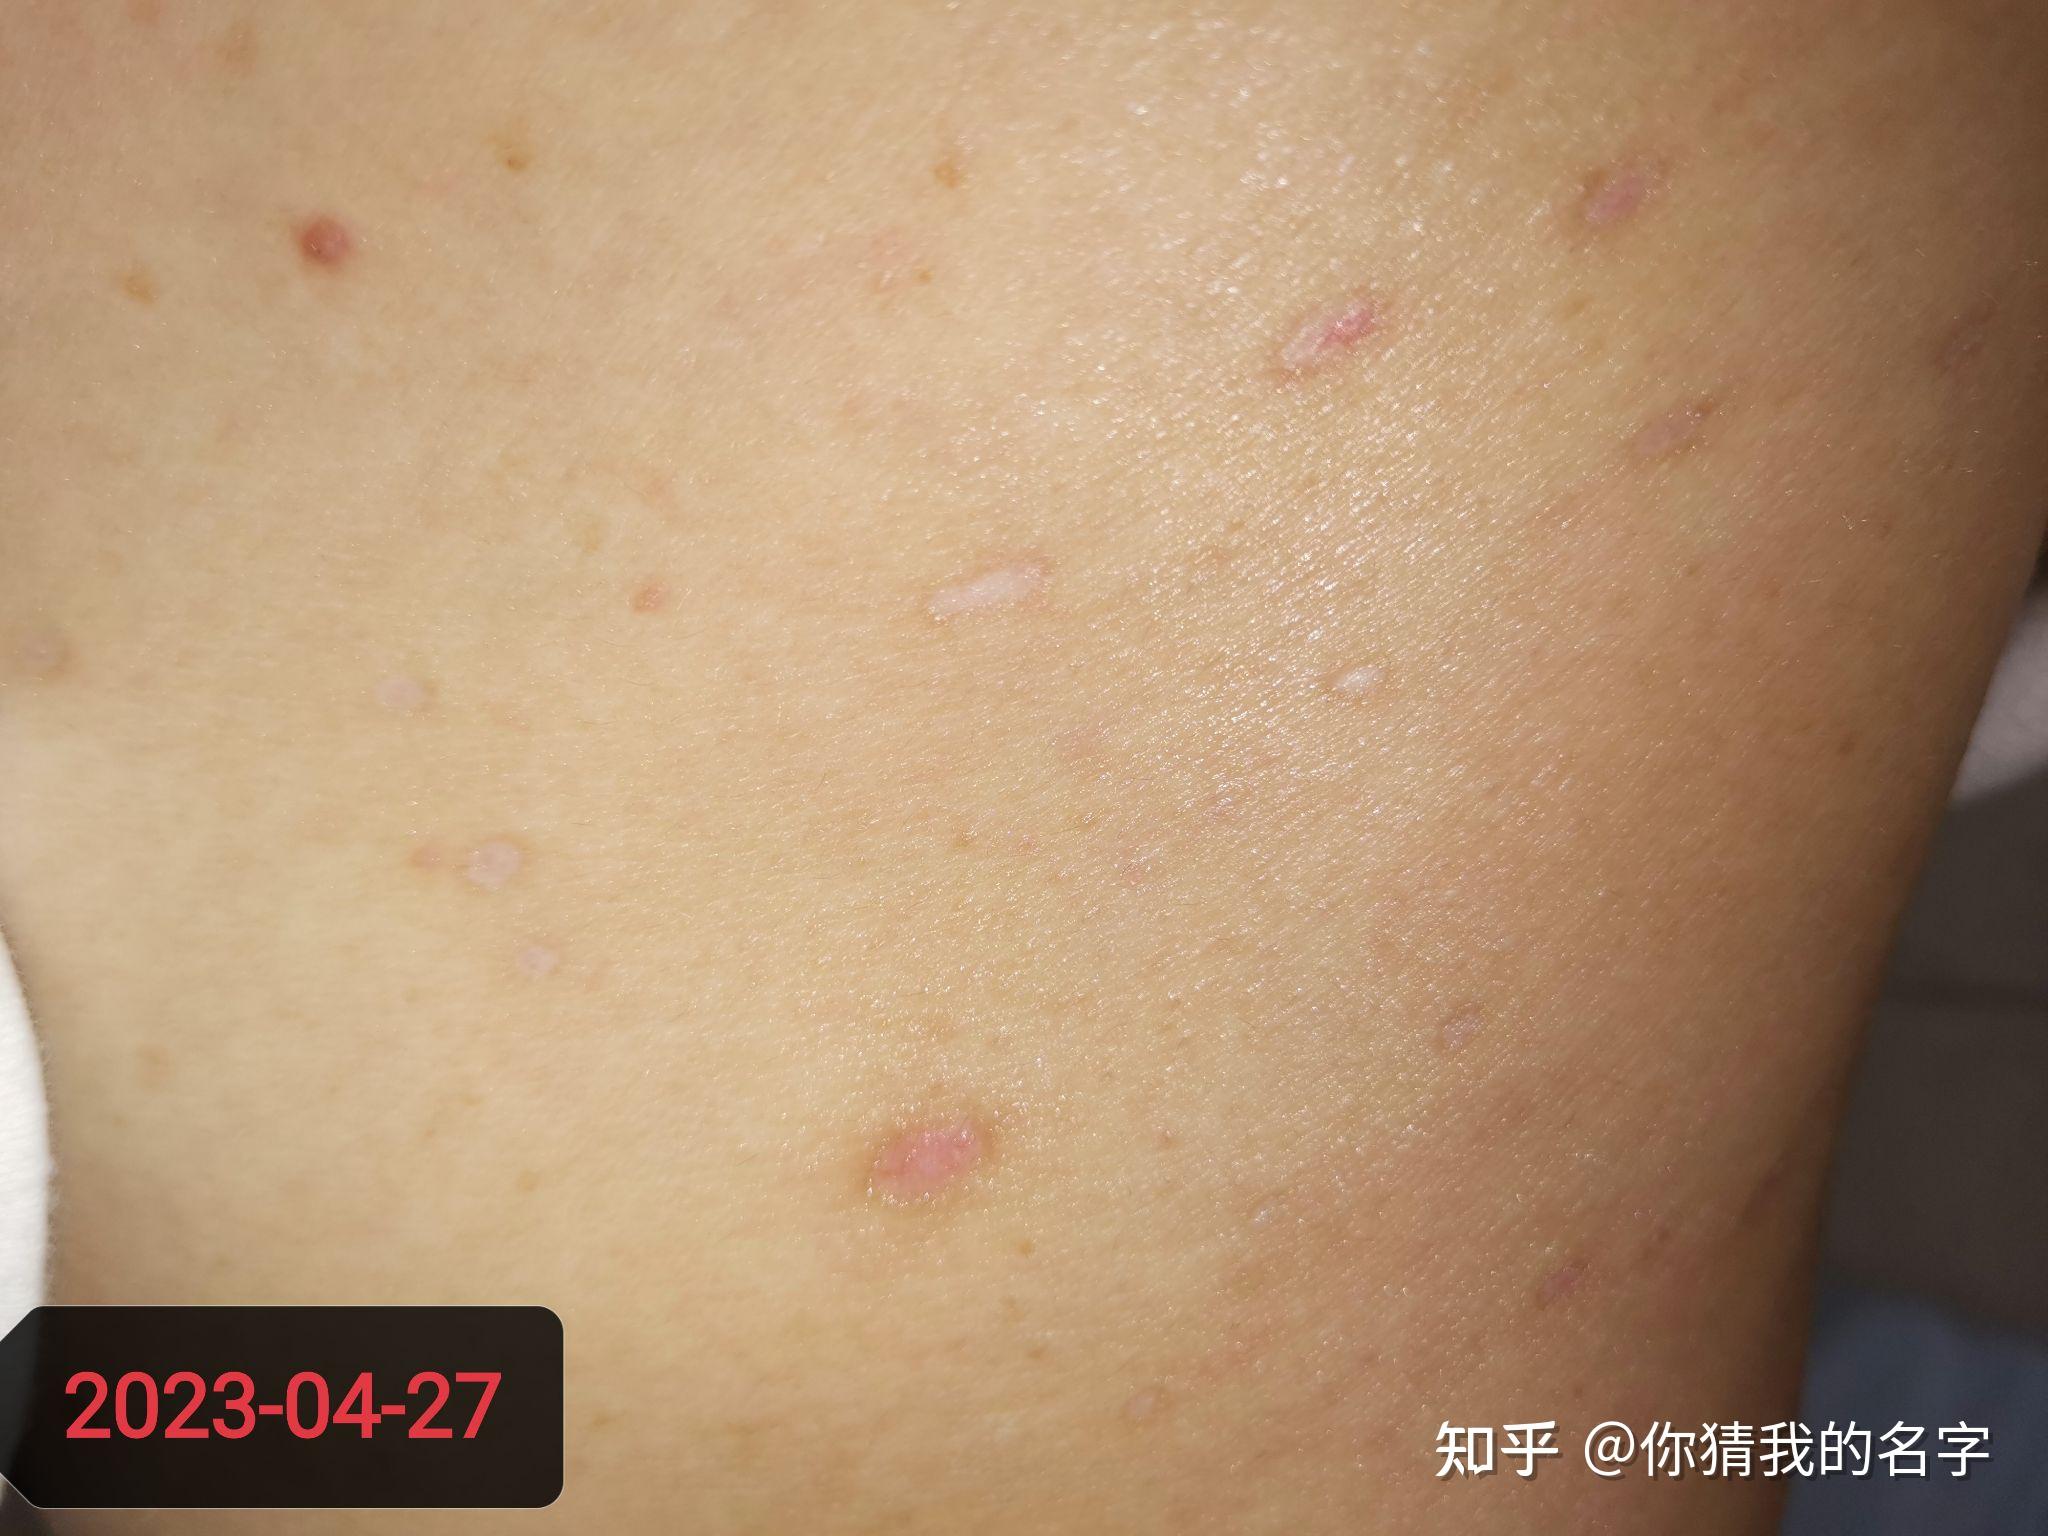 皮赘/疣 Skin Tag - Derma Revive